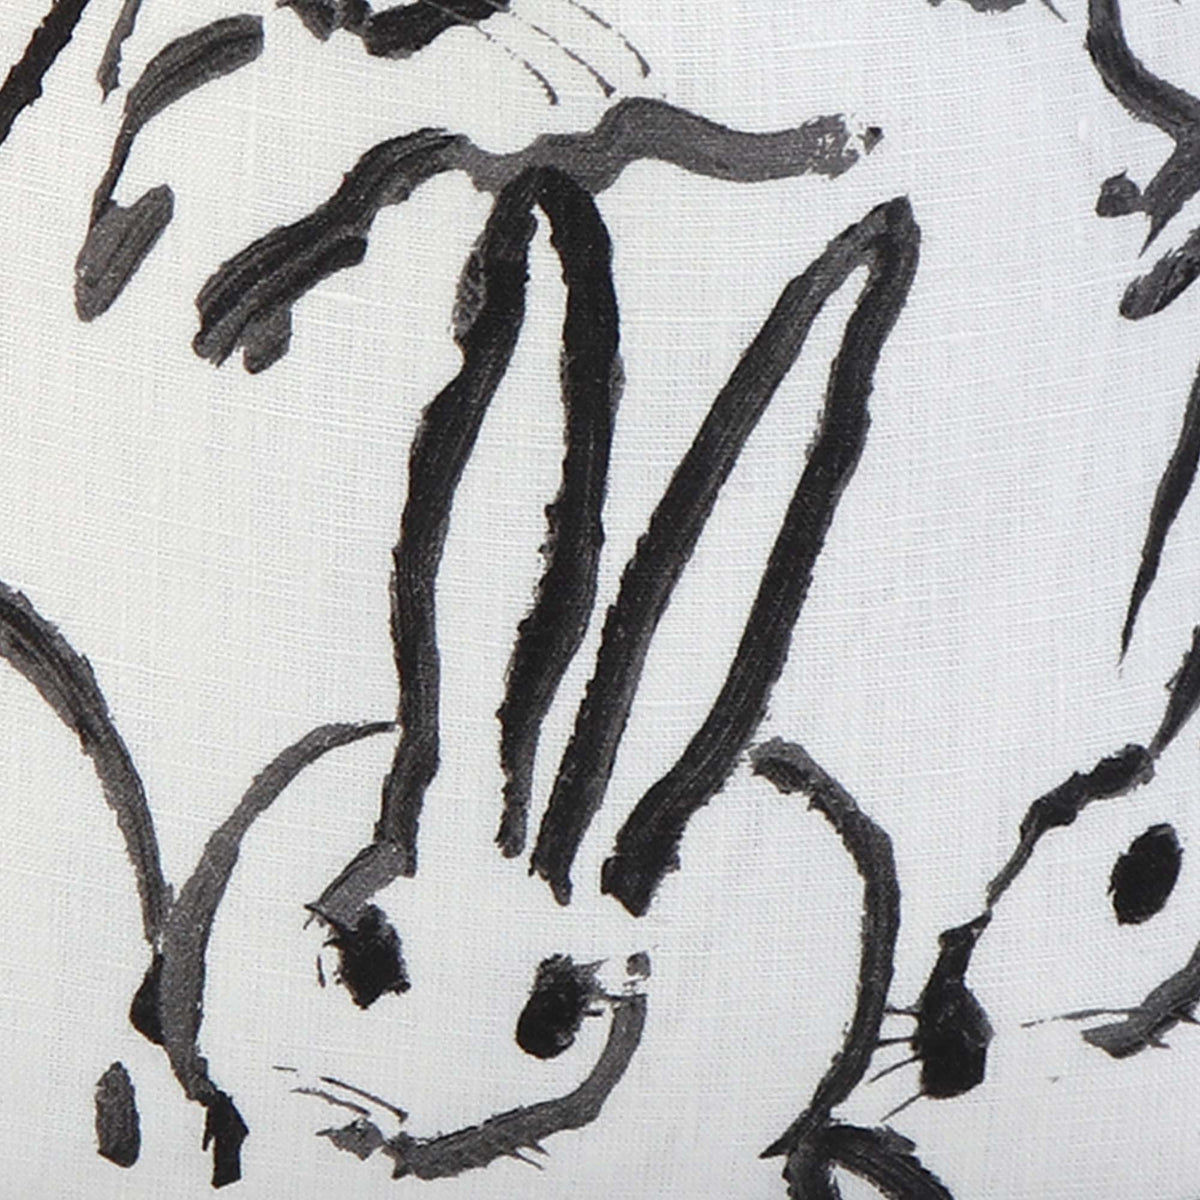 Hutch Black Bunny / 4x4 inch Fabric Swatch